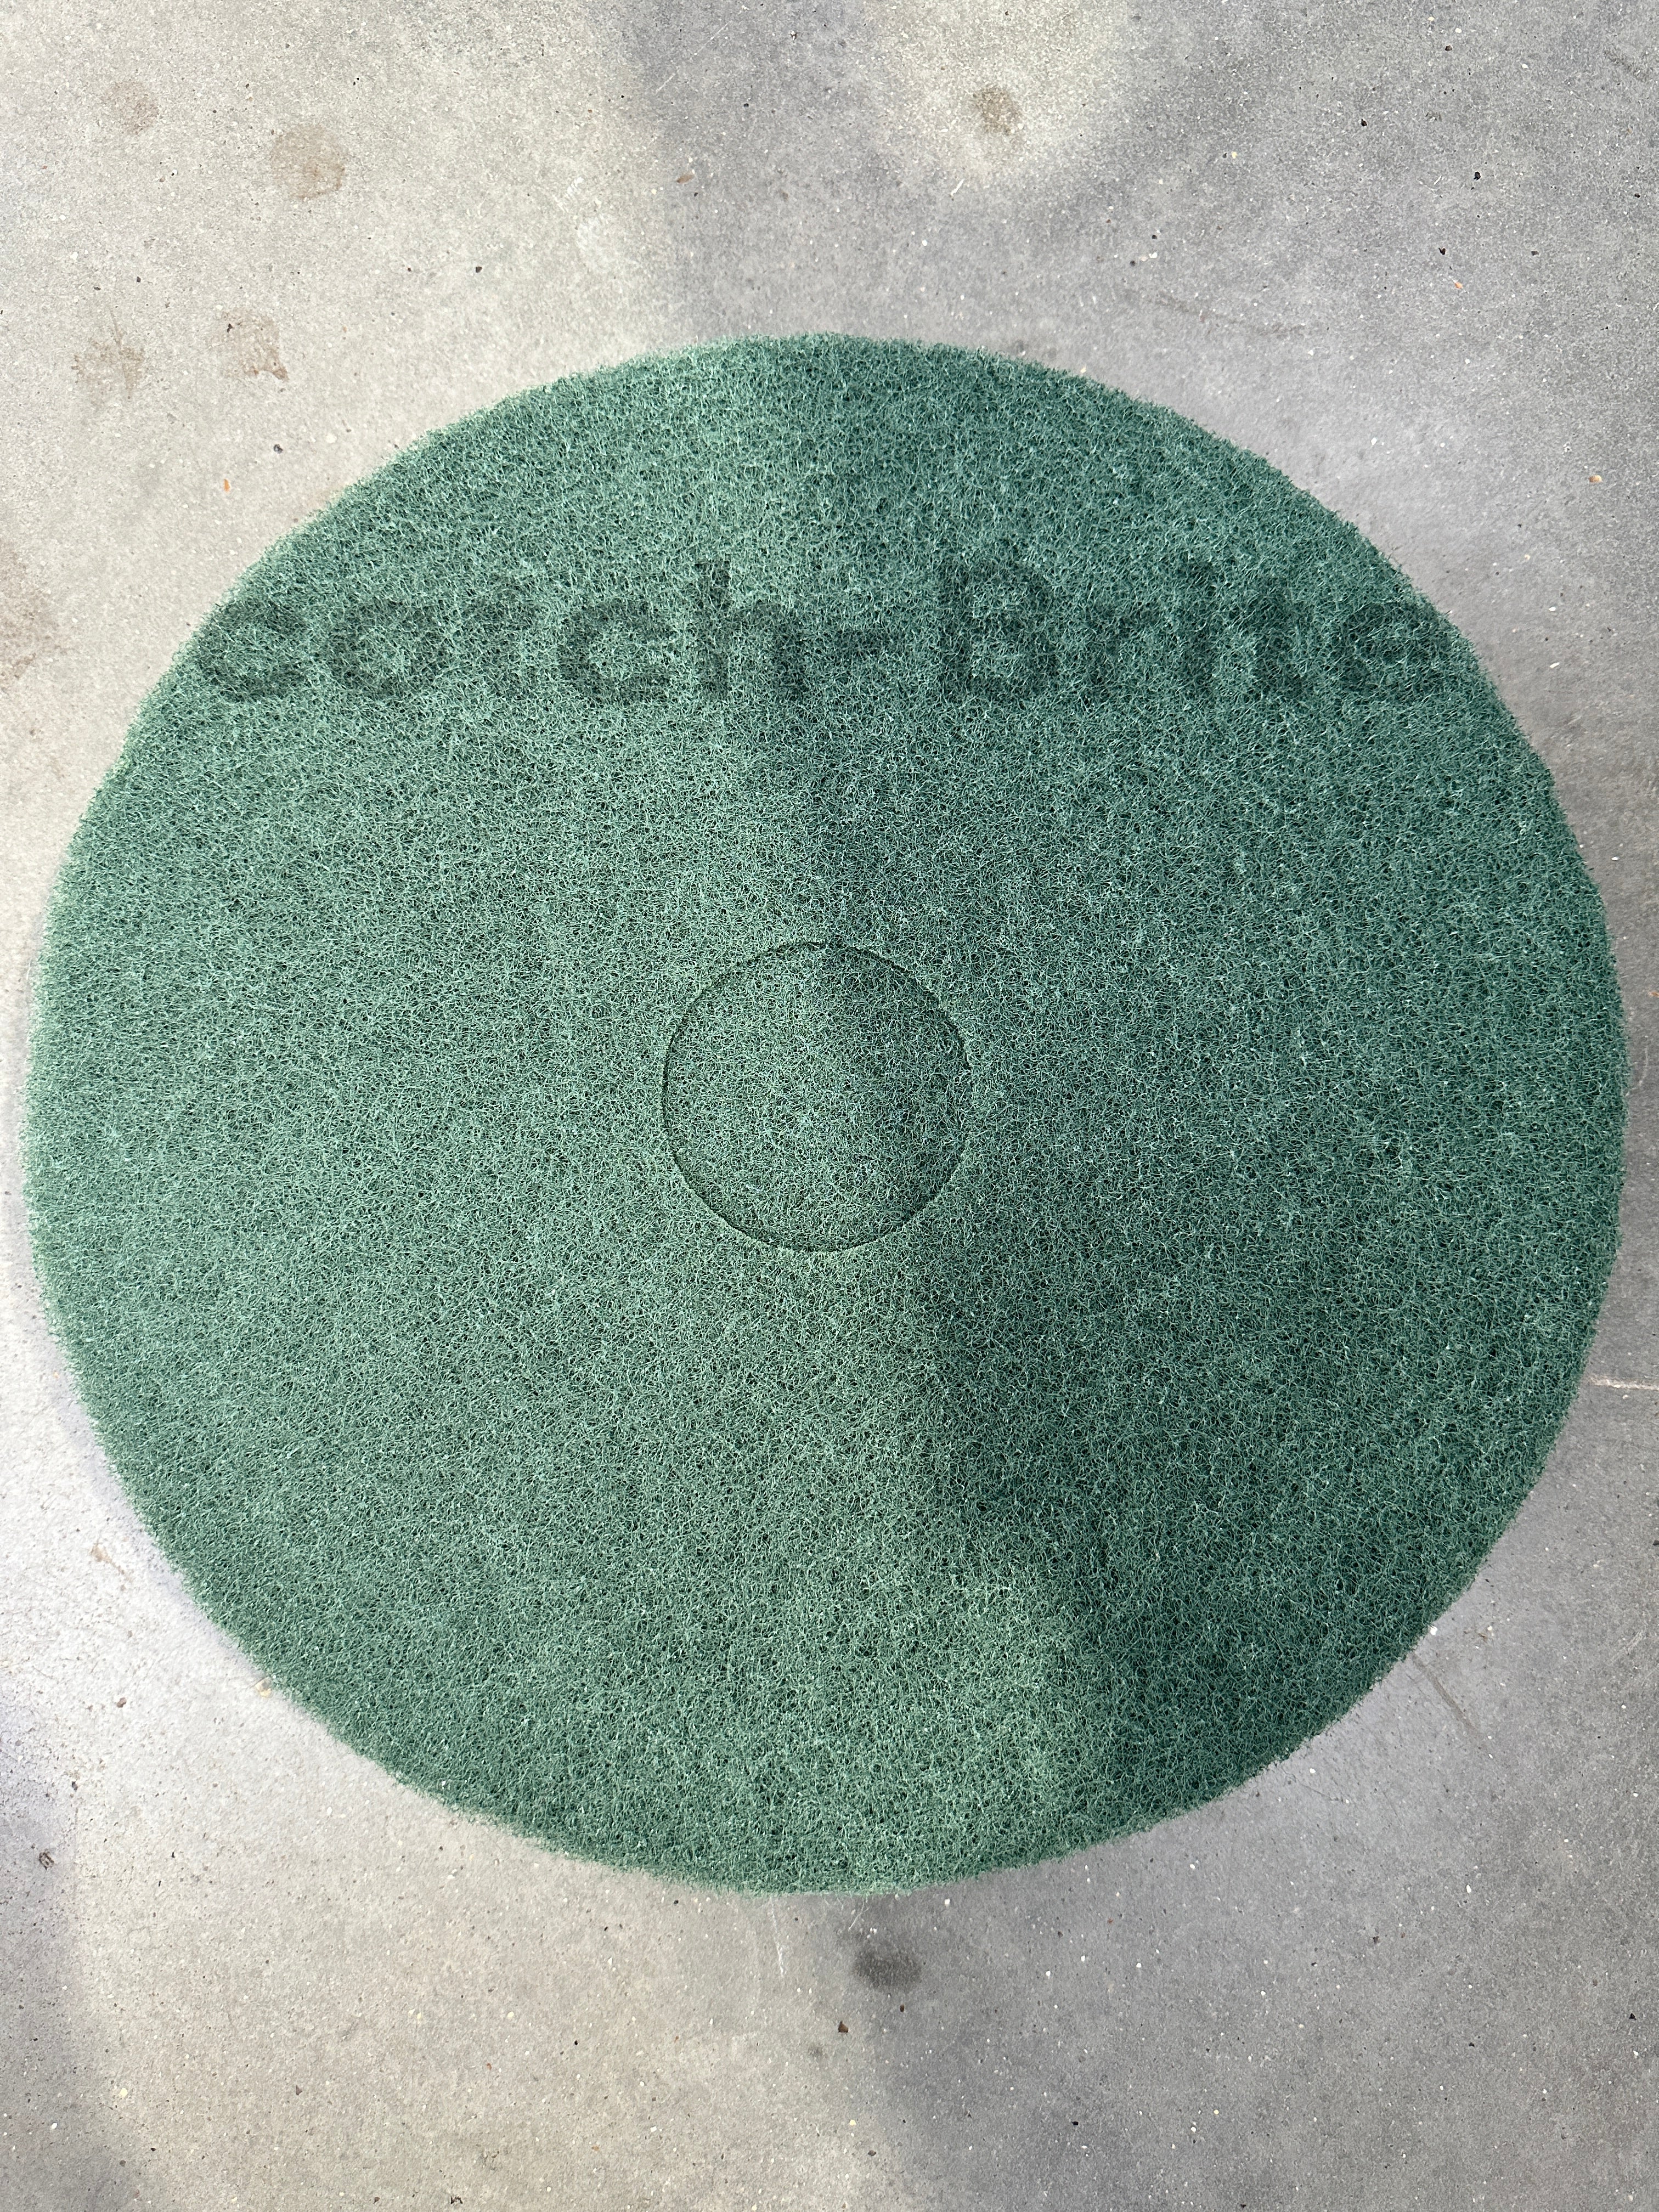 Prochem TM3205 3M Contract Floor Pad Green Floor Scrubbing 41cm 16inch